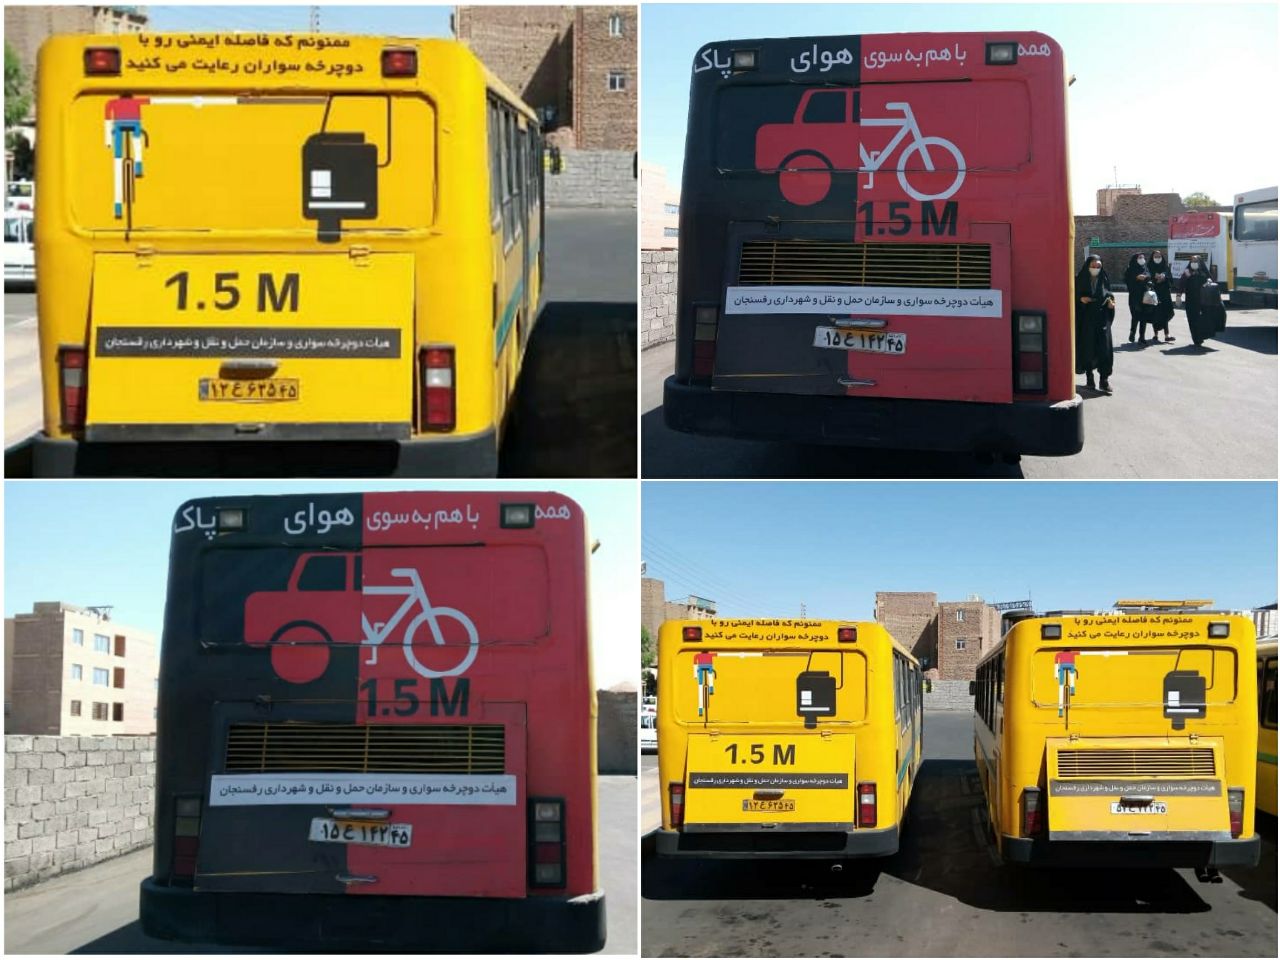 سازمان حمل و نقل شهری مروج فرهنگ استفاده از دوچرخه